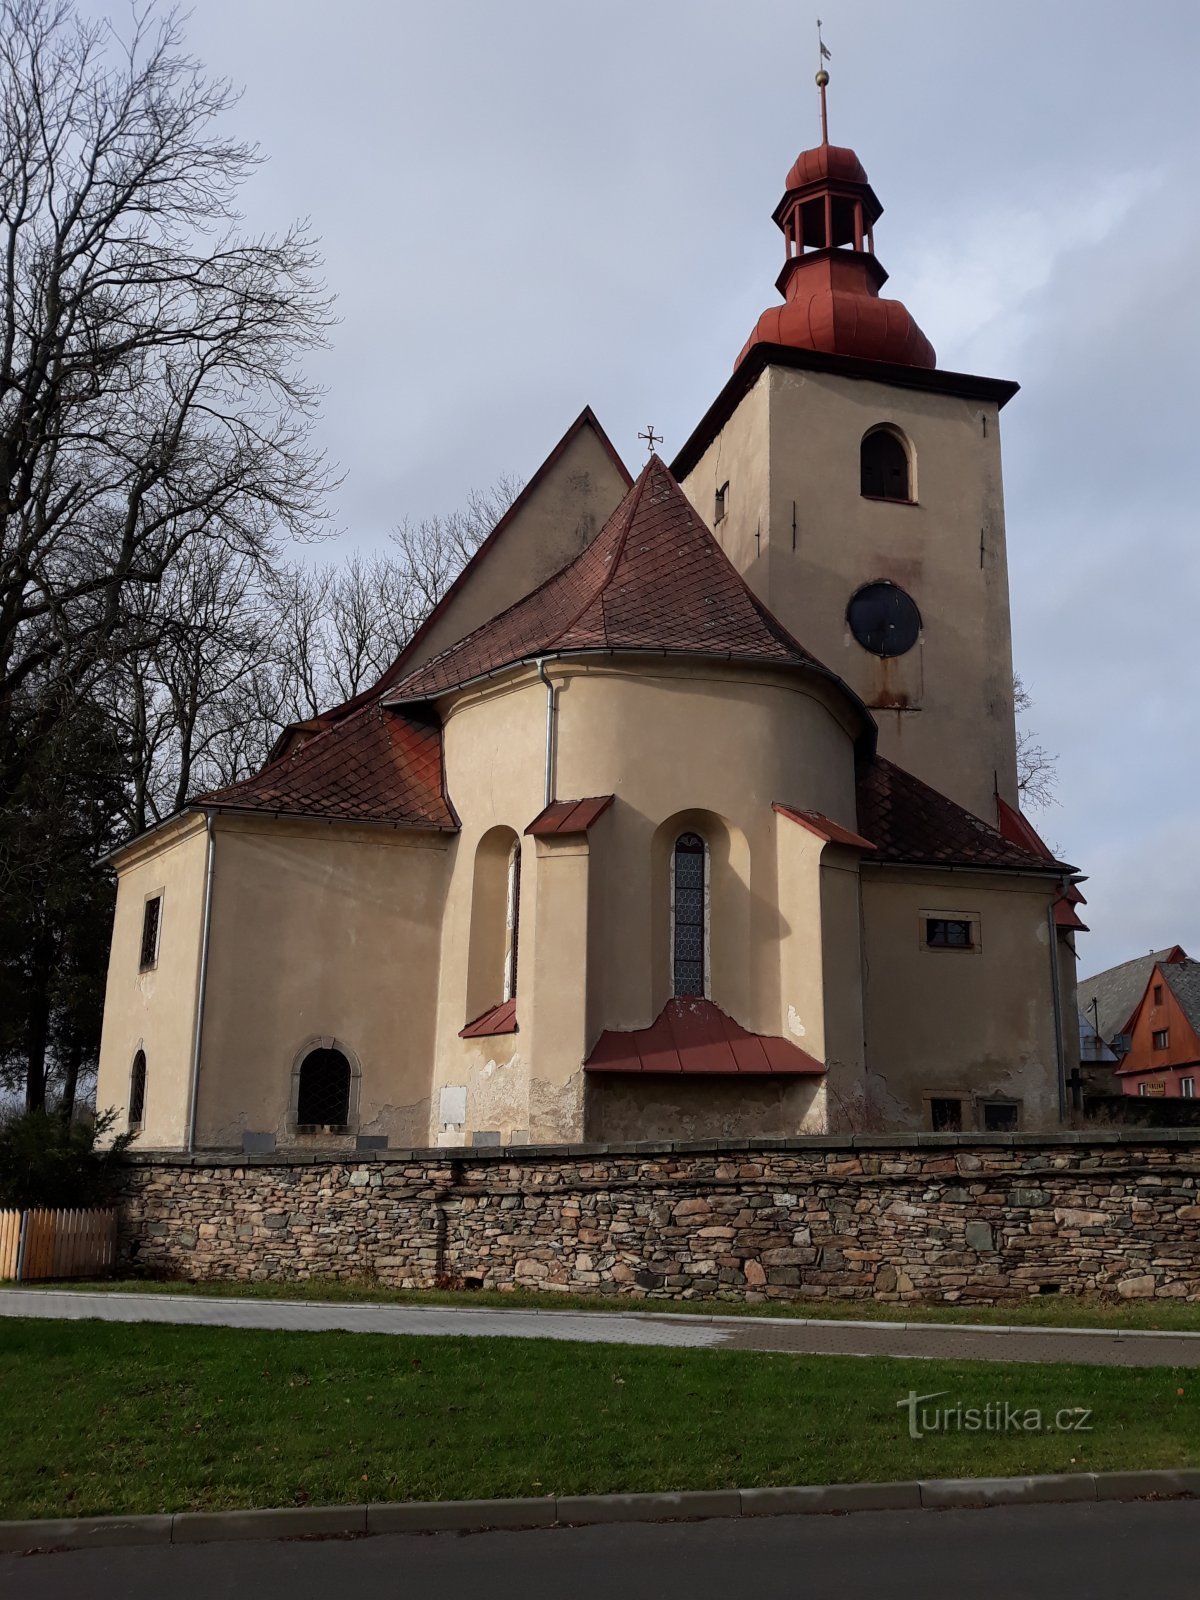 Rokytnice im Adlergebirge - Kirche der Hl. Dreifaltigkeit